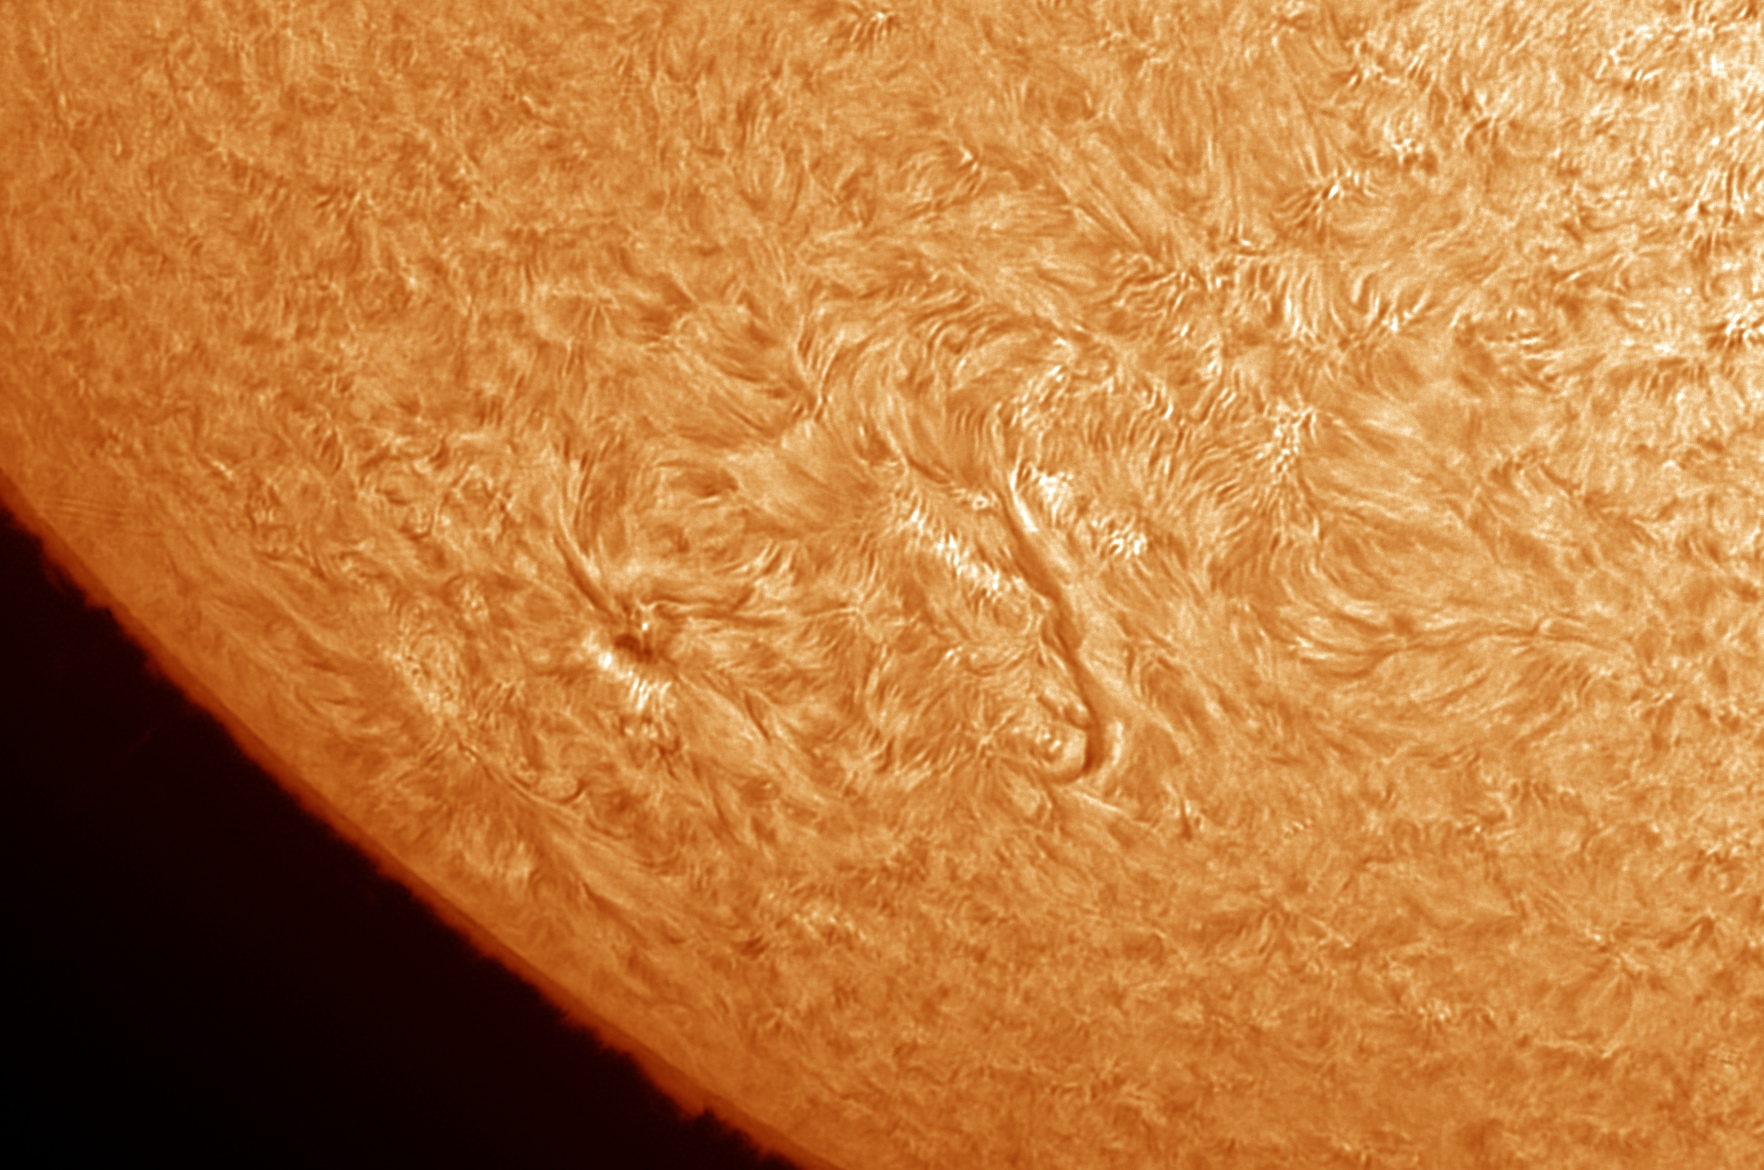 sol-20nov20-c.jpg.f4653eb568921ebc8f09f10bfd8af725.jpg